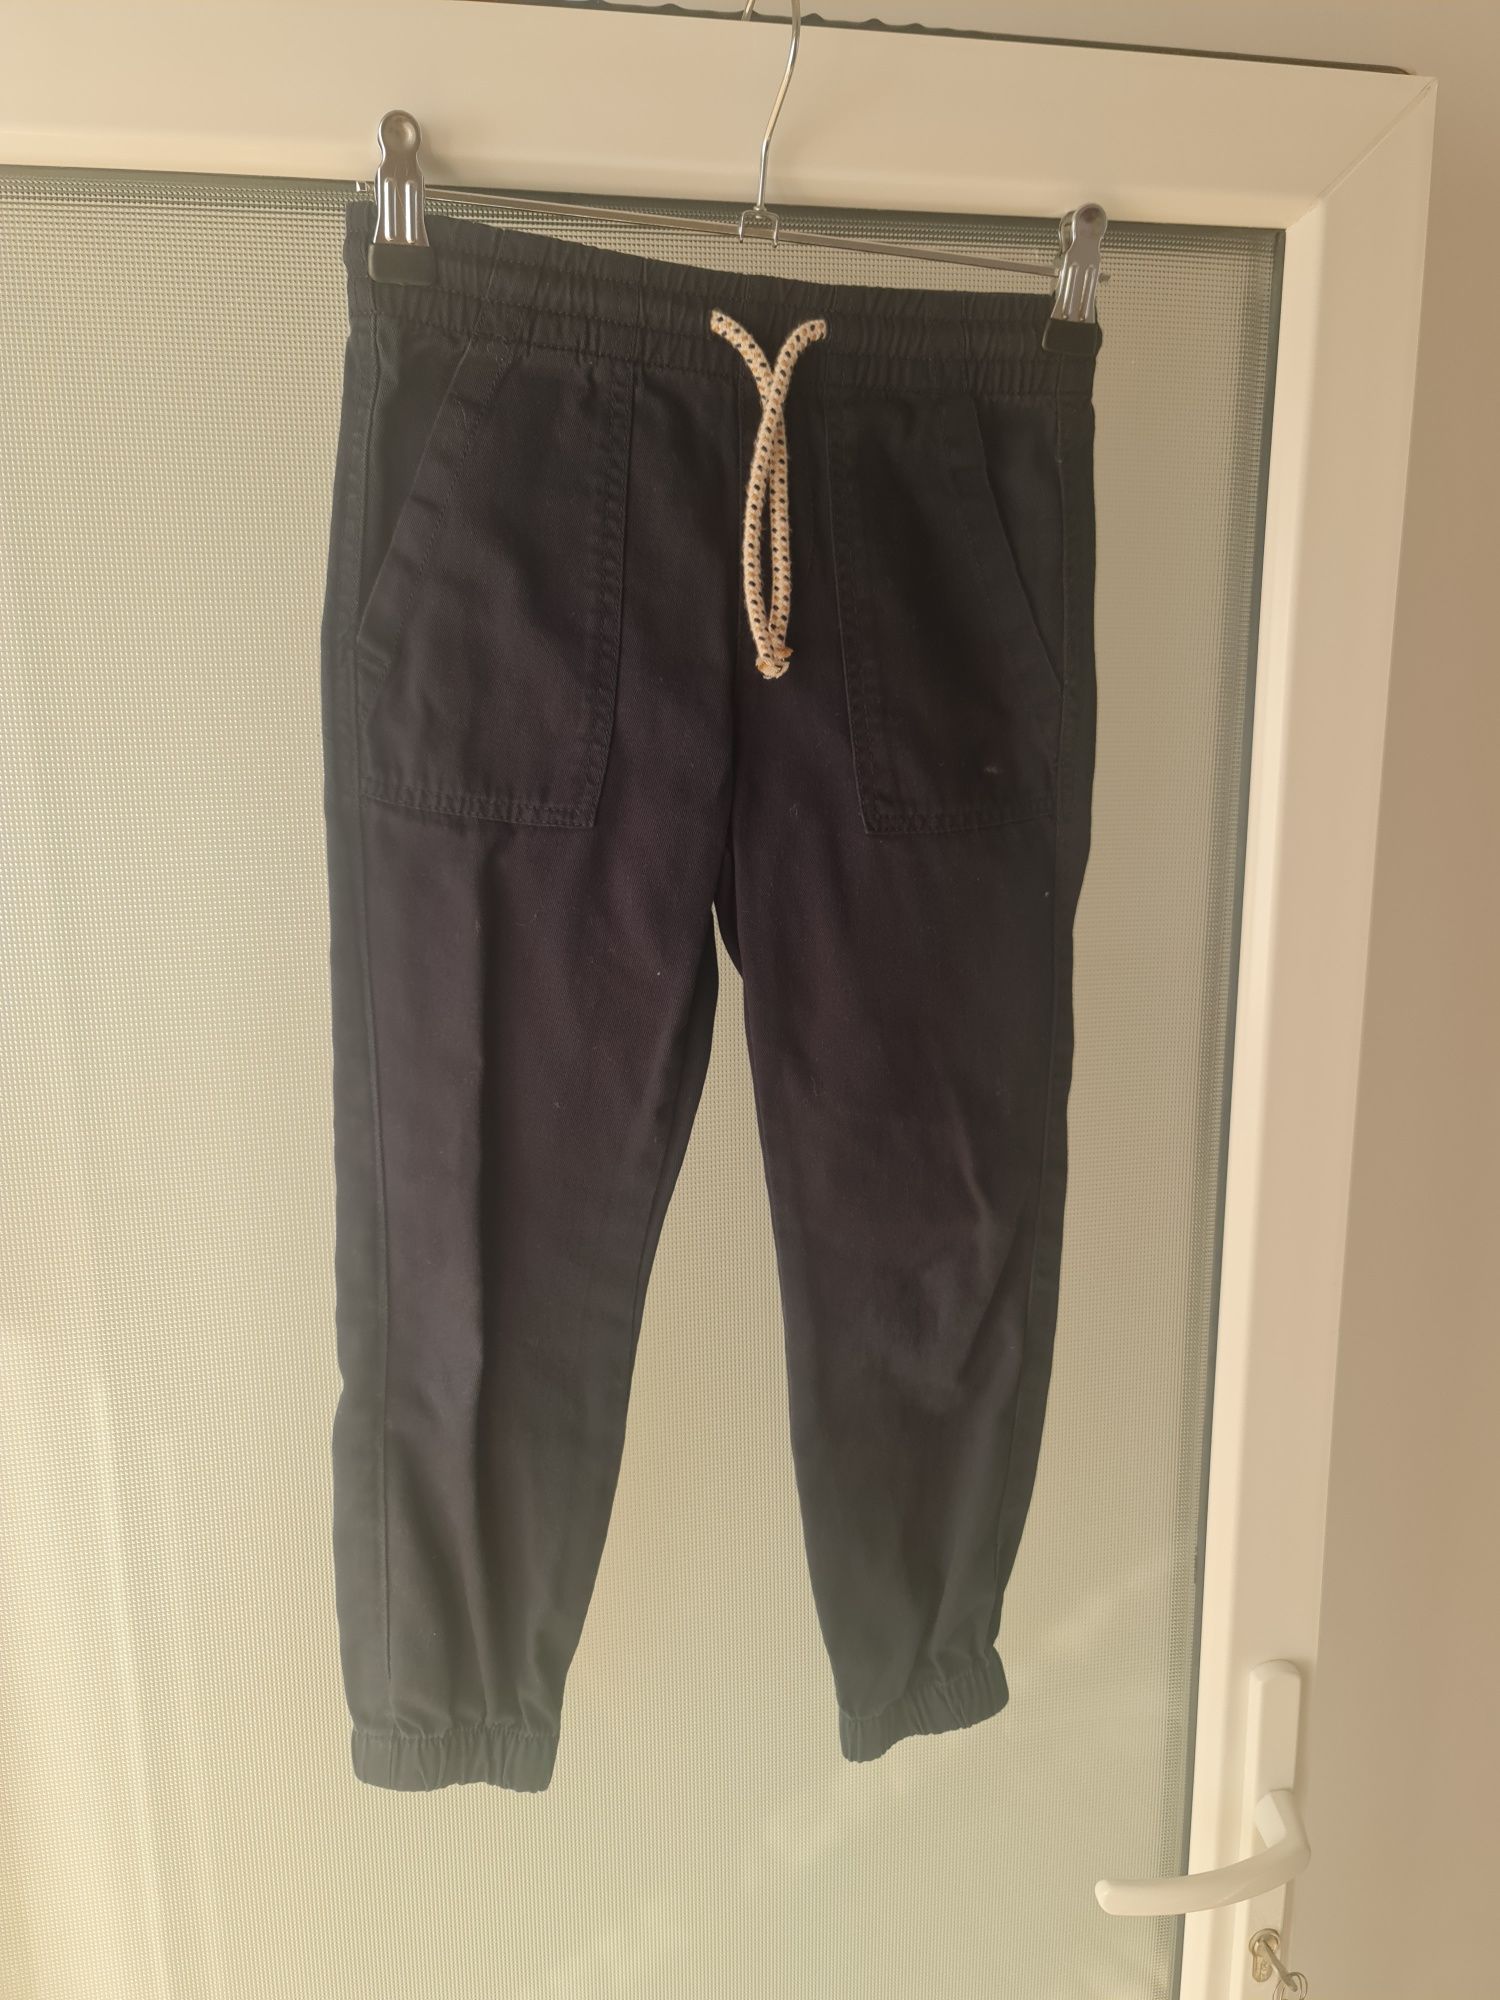 Pantaloni băiat, mărimea 110, 5-6 ani și 116 cm și 6-7 ani